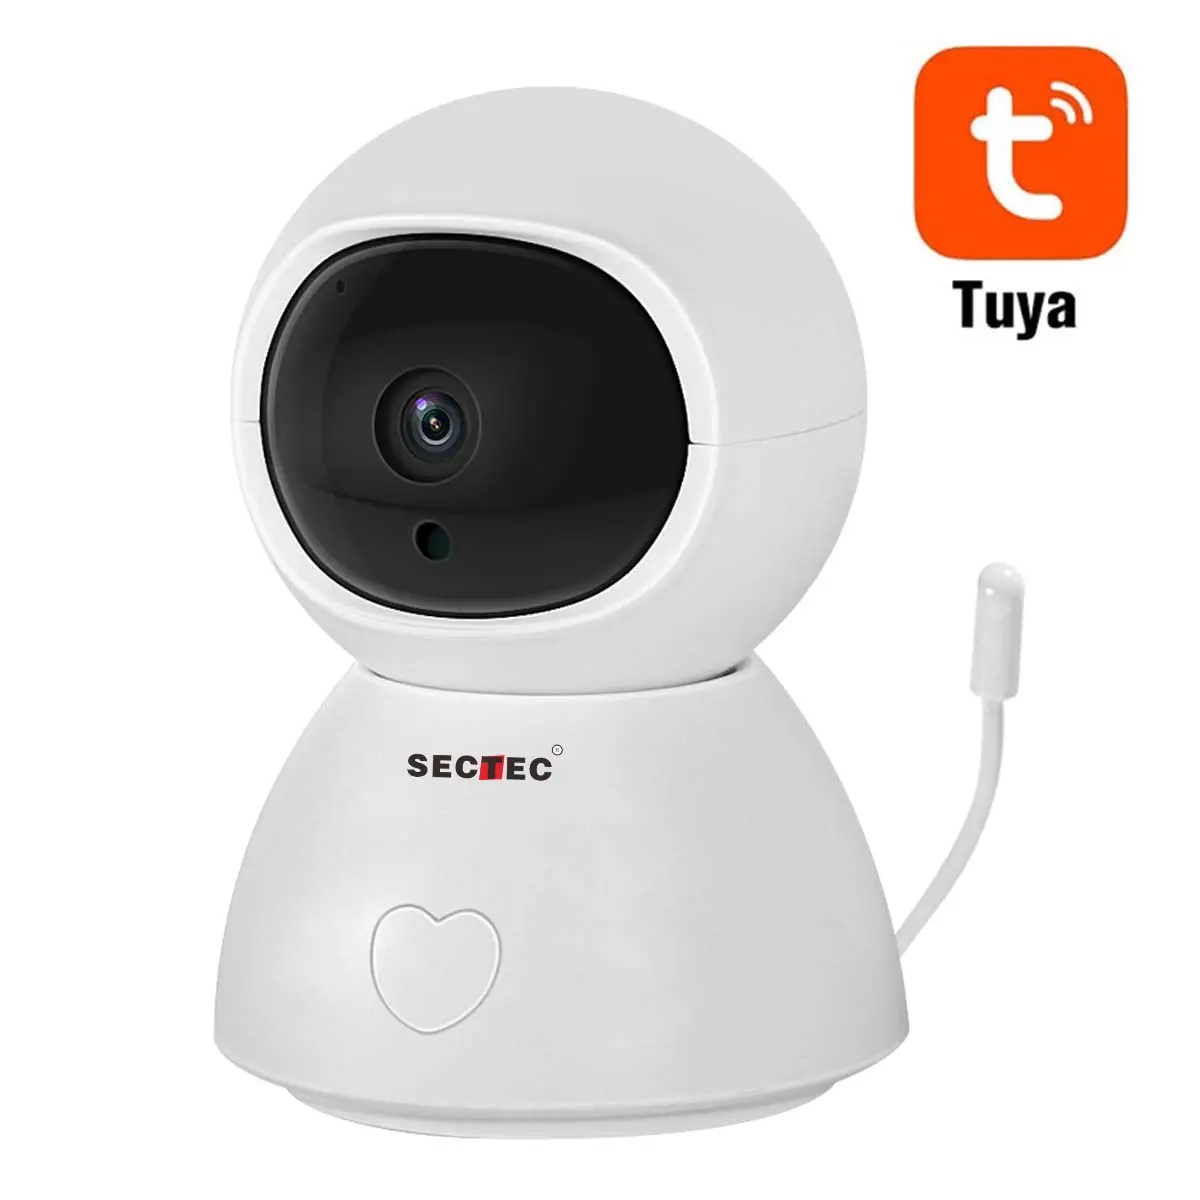 للبيع بالجملة من Sectec كاميرا عالية الدقة 1080 بيكسل الأعلى مبيعاً تستخدم داخل المنزل الذكي تعمل بالانترنت بروتوكول Tuya كاميرا مراقبة فيديو كاميرات مراقبة الأطفال CCTV